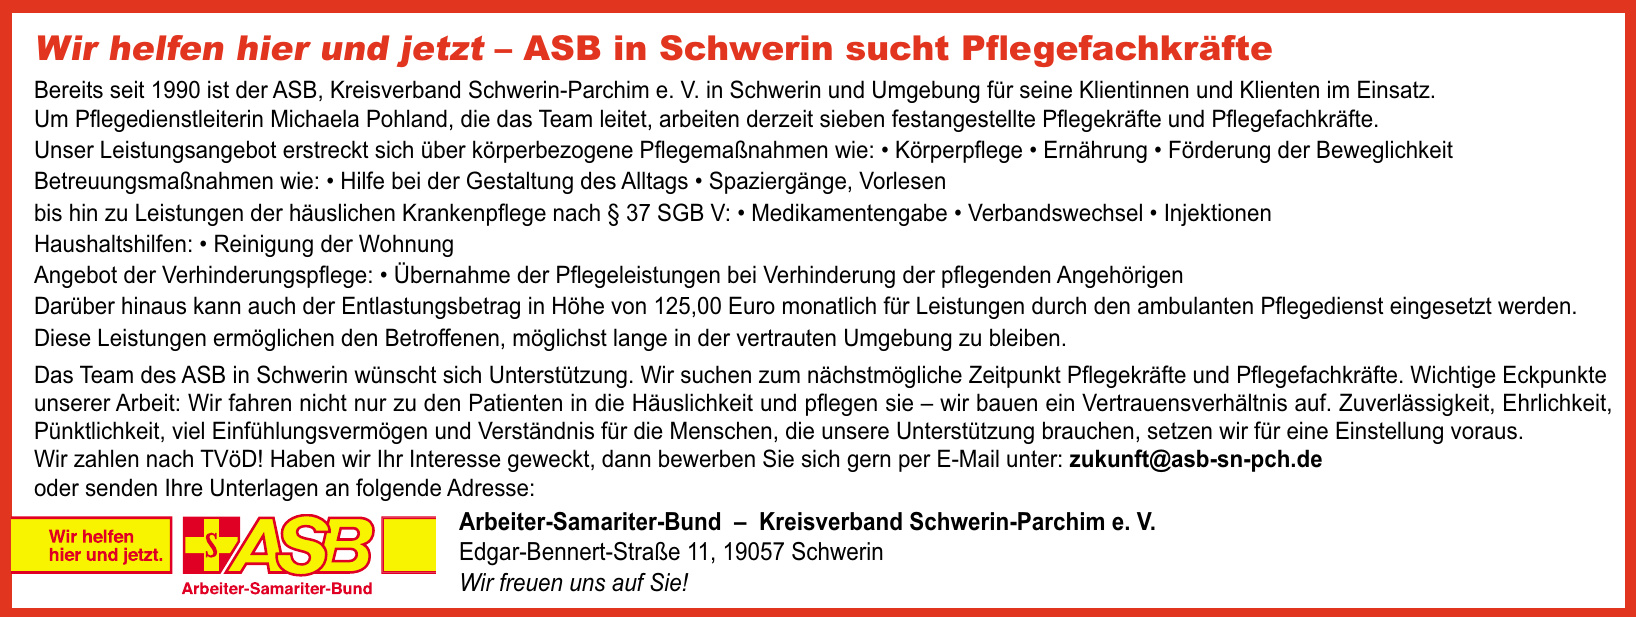 Arbeiter-Samariter-Bund – Kreisverband Schwerin-Parchim e. V.